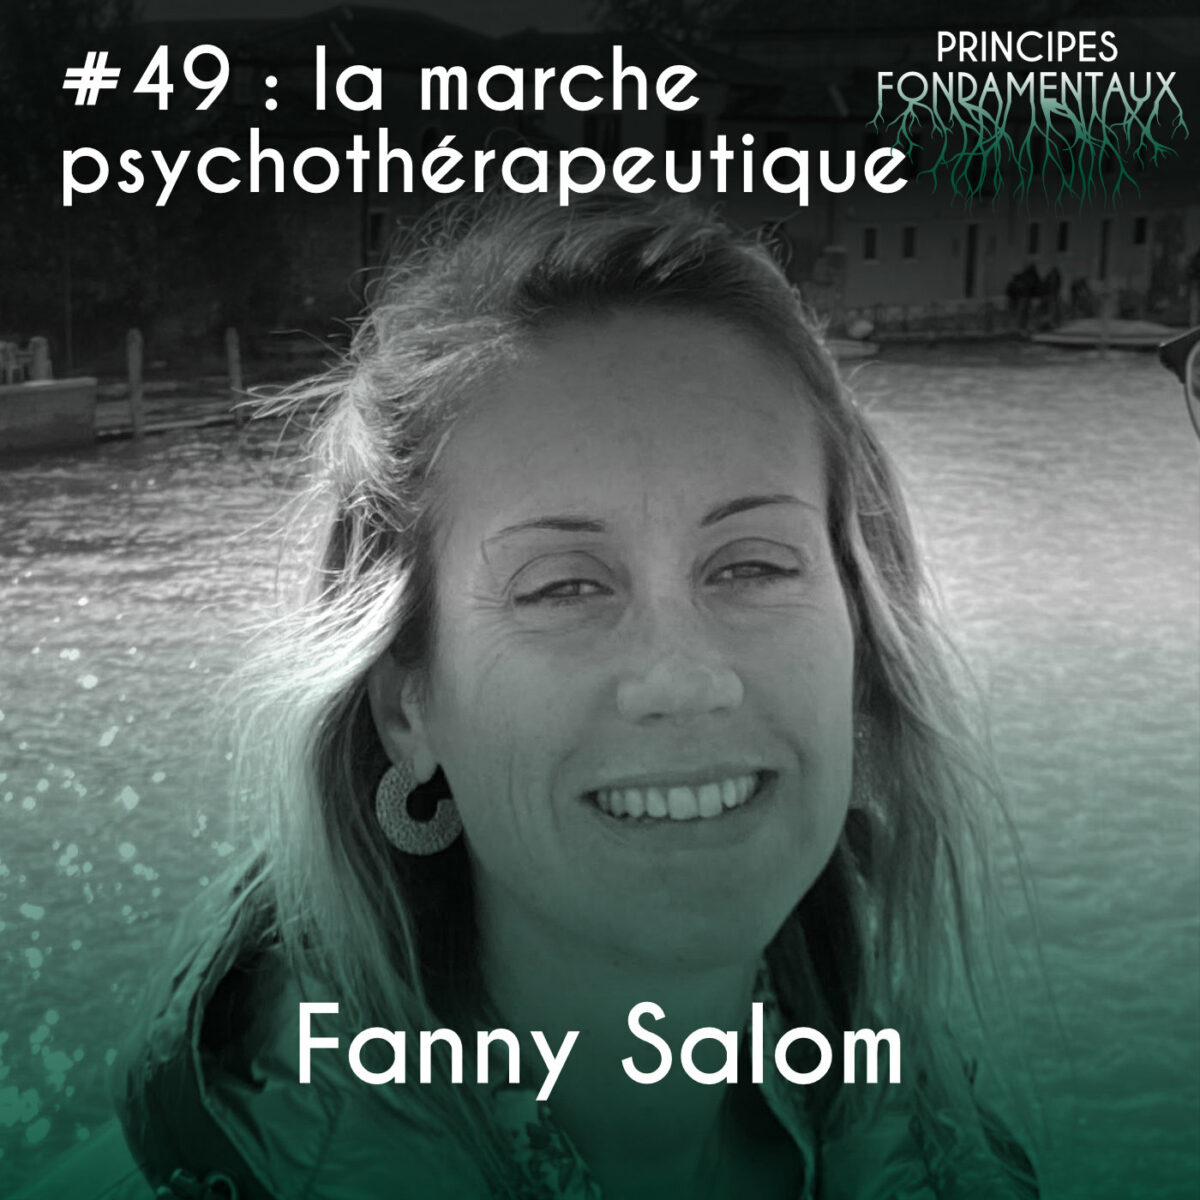 Podcast #49 : Fanny Salom - la marche psychothérapeutique